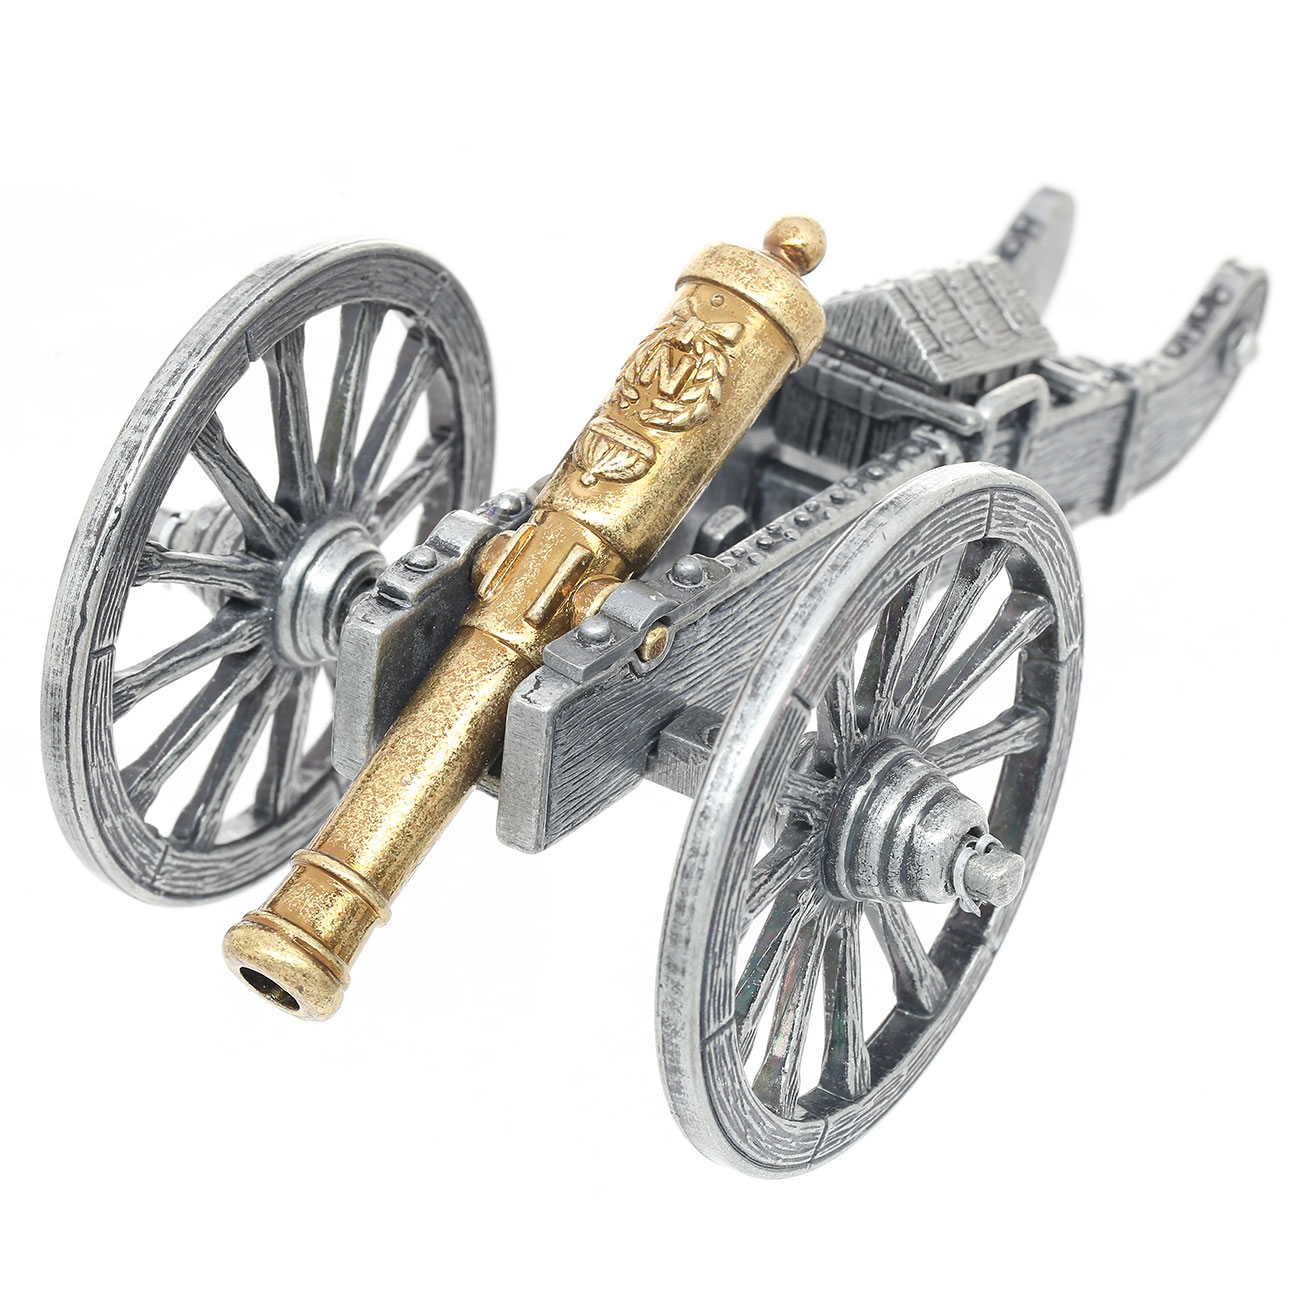 Miniatur Kanone Napoleon Bild 1